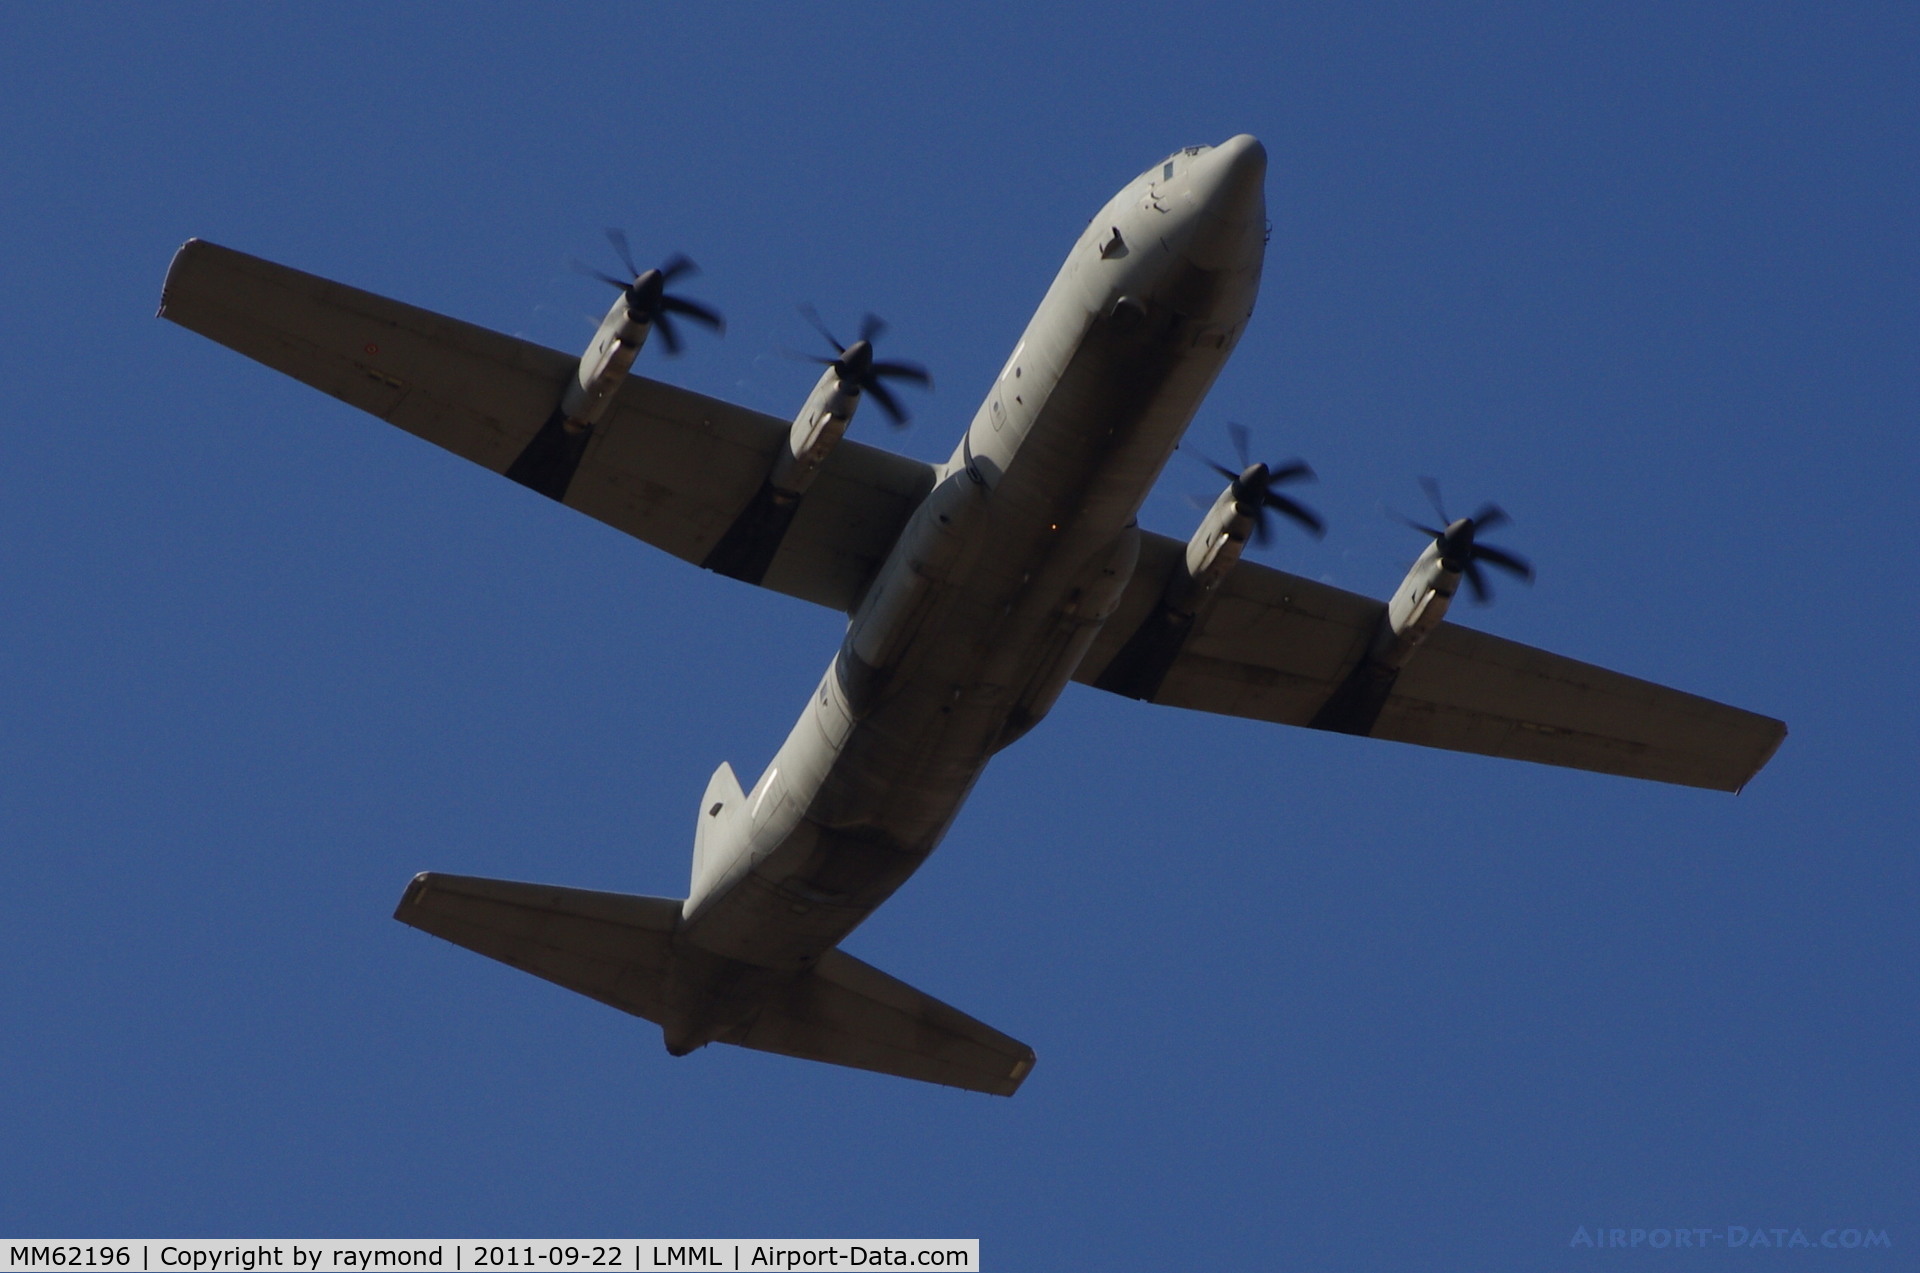 MM62196, Lockheed Martin C-130J-30 Super Hercules C/N 382-5550, C130J Hercules MM62196/46-62 Italian Air Force